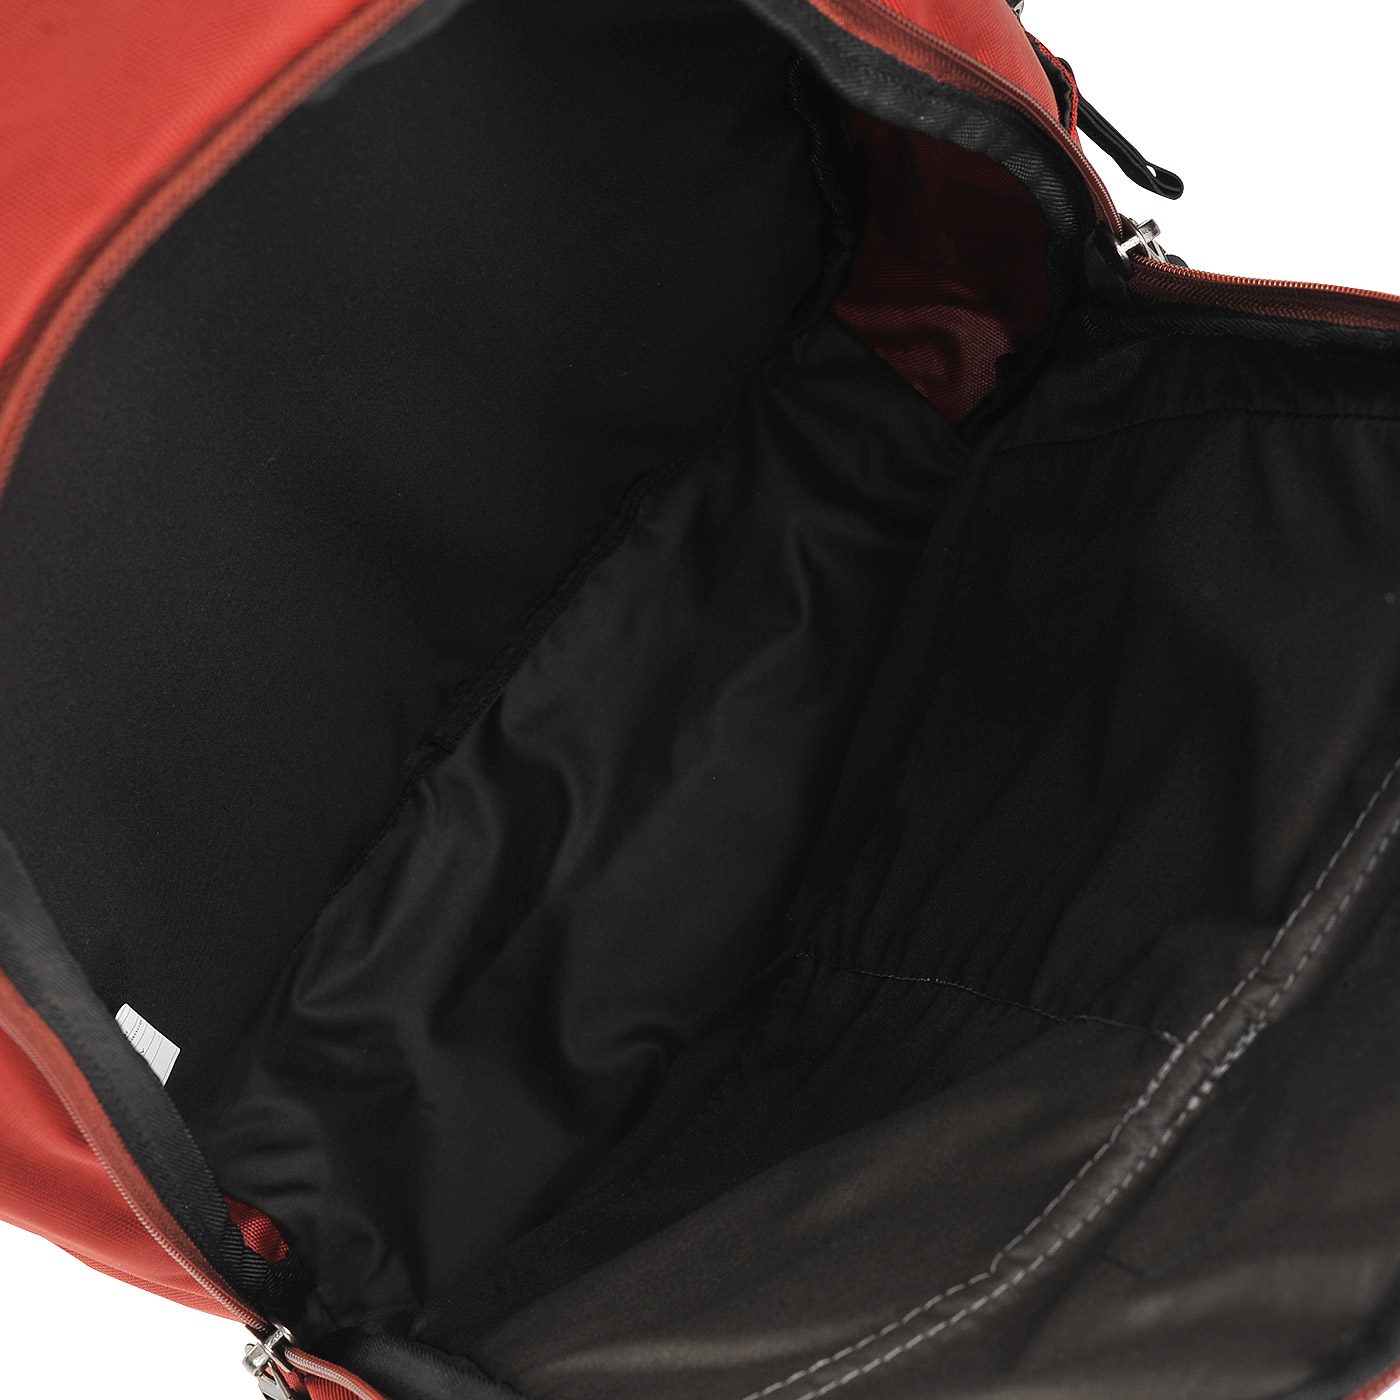 Тканевый рюкзак Victorinox Altmont 3.0